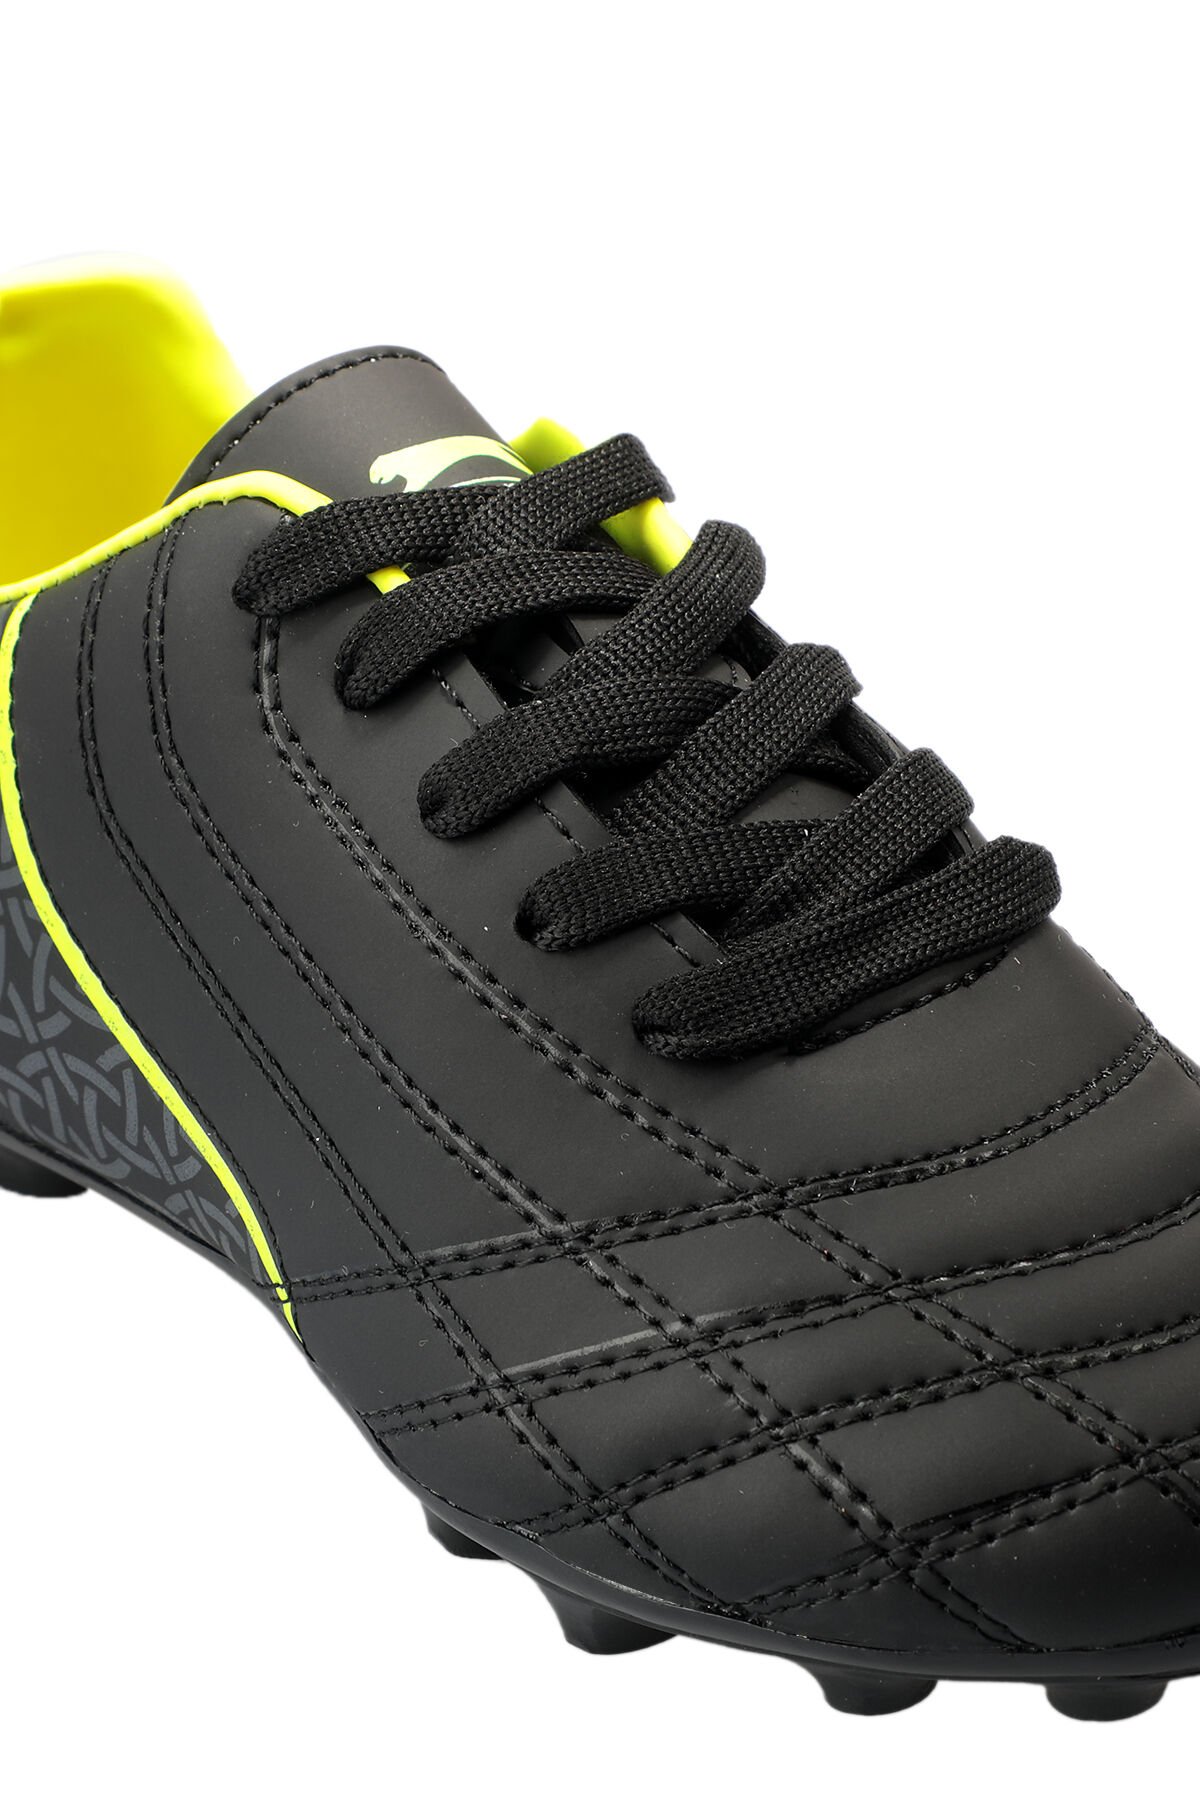 Slazenger HINO KR Futbol Erkek Çocuk Krampon Ayakkabı Siyah / Sarı - Thumbnail